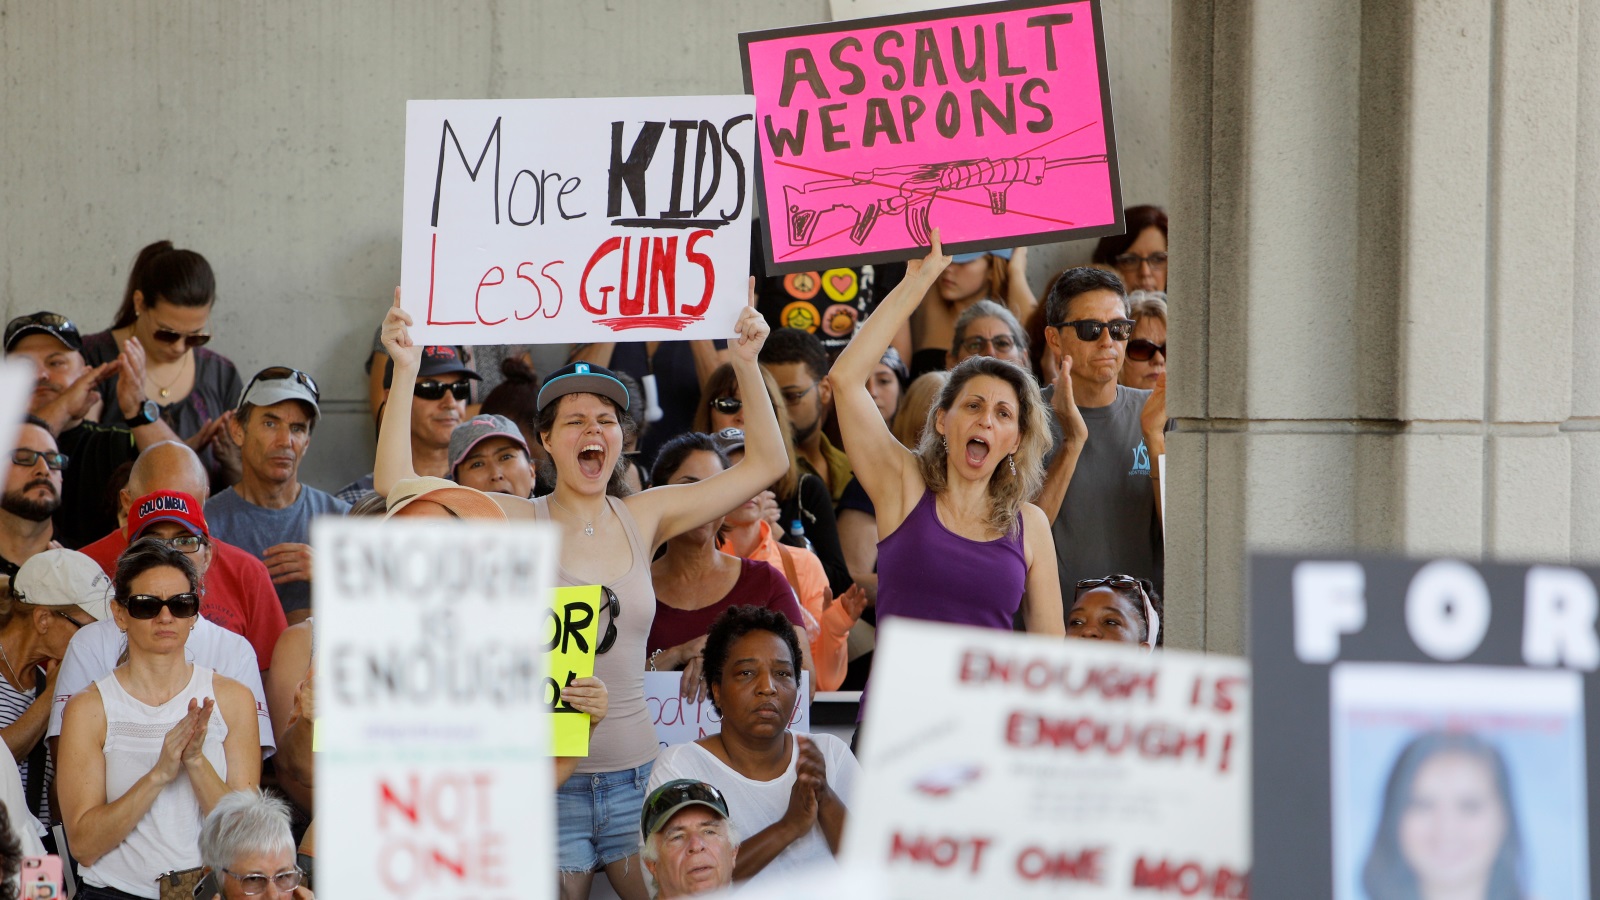 متظاهرون بأميركا يرفعون لافتات تطالب بمزيد من السيطرة على السلاح وذلك بعد إطلاق النار على مدرسة في فلوريدا بالولايات المتحدة (رويترز)